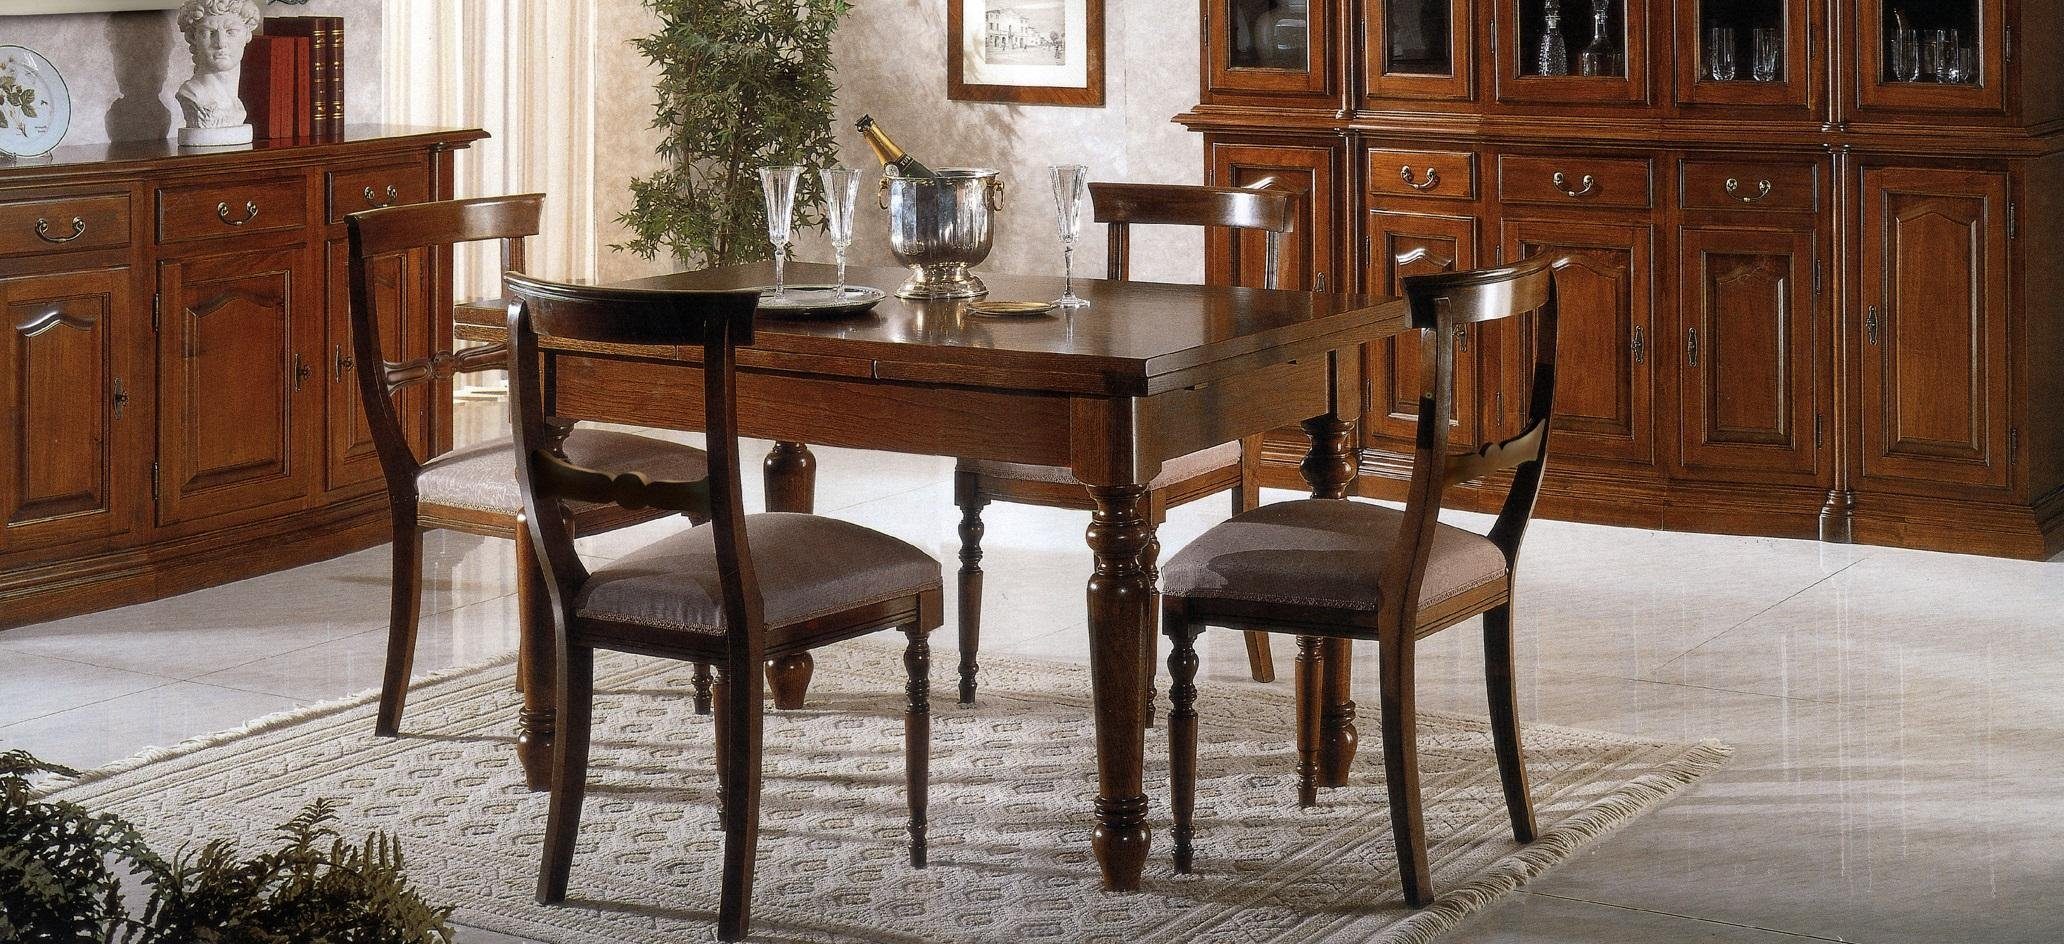 JVmoebel Esstisch, Esstisch Tisch Tische Einrichtung Italienische Möbel Möbel Massiv